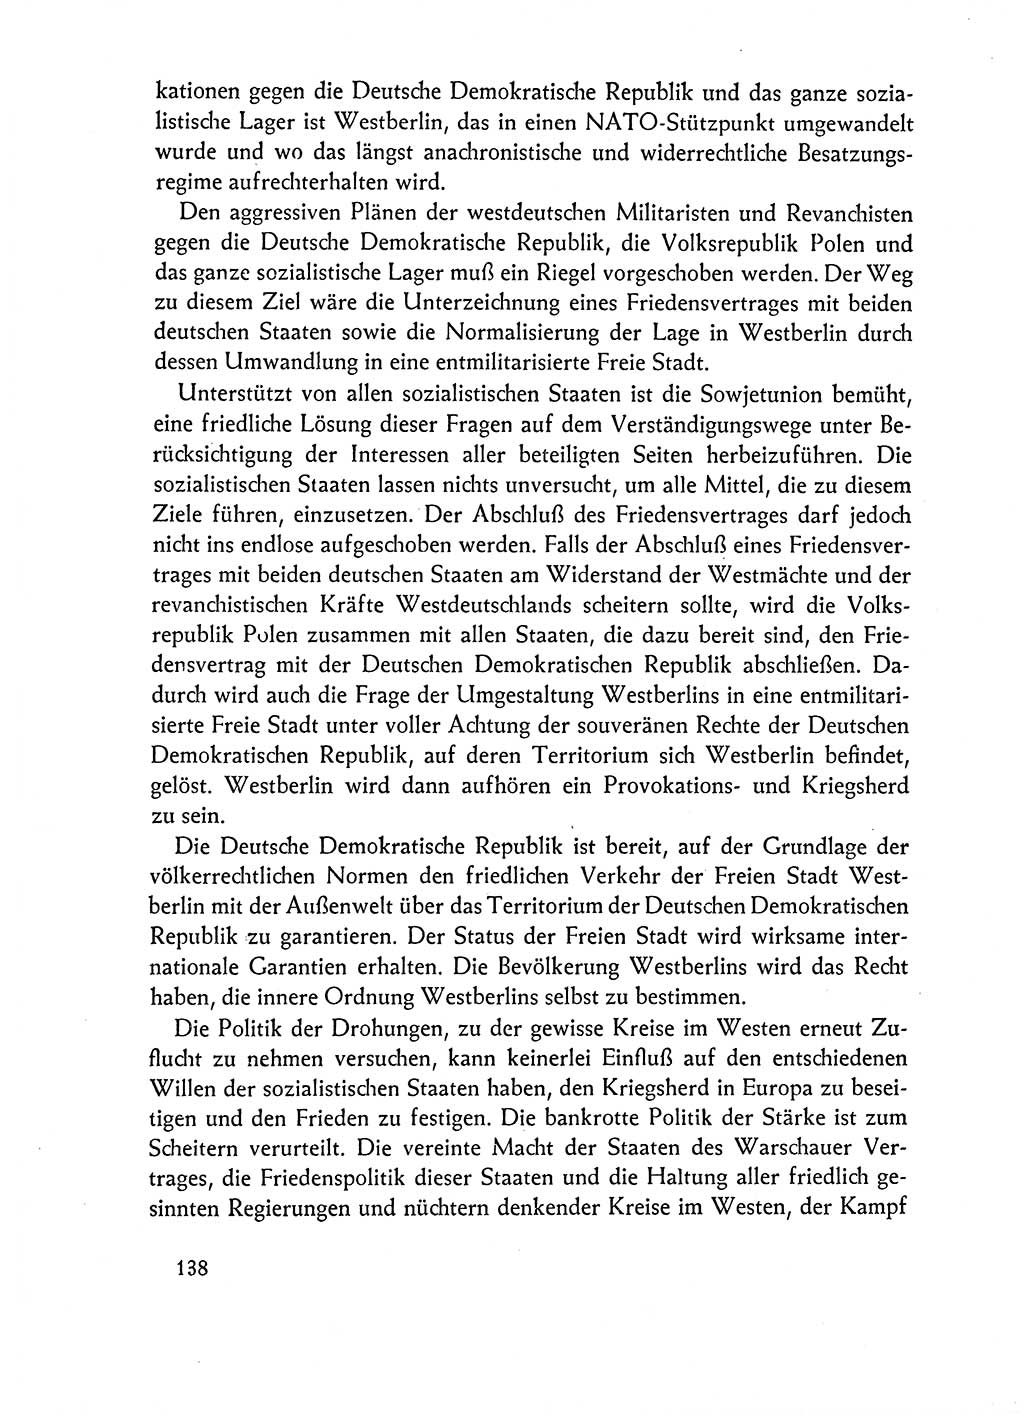 Dokumente der Sozialistischen Einheitspartei Deutschlands (SED) [Deutsche Demokratische Republik (DDR)] 1962-1963, Seite 138 (Dok. SED DDR 1962-1963, S. 138)